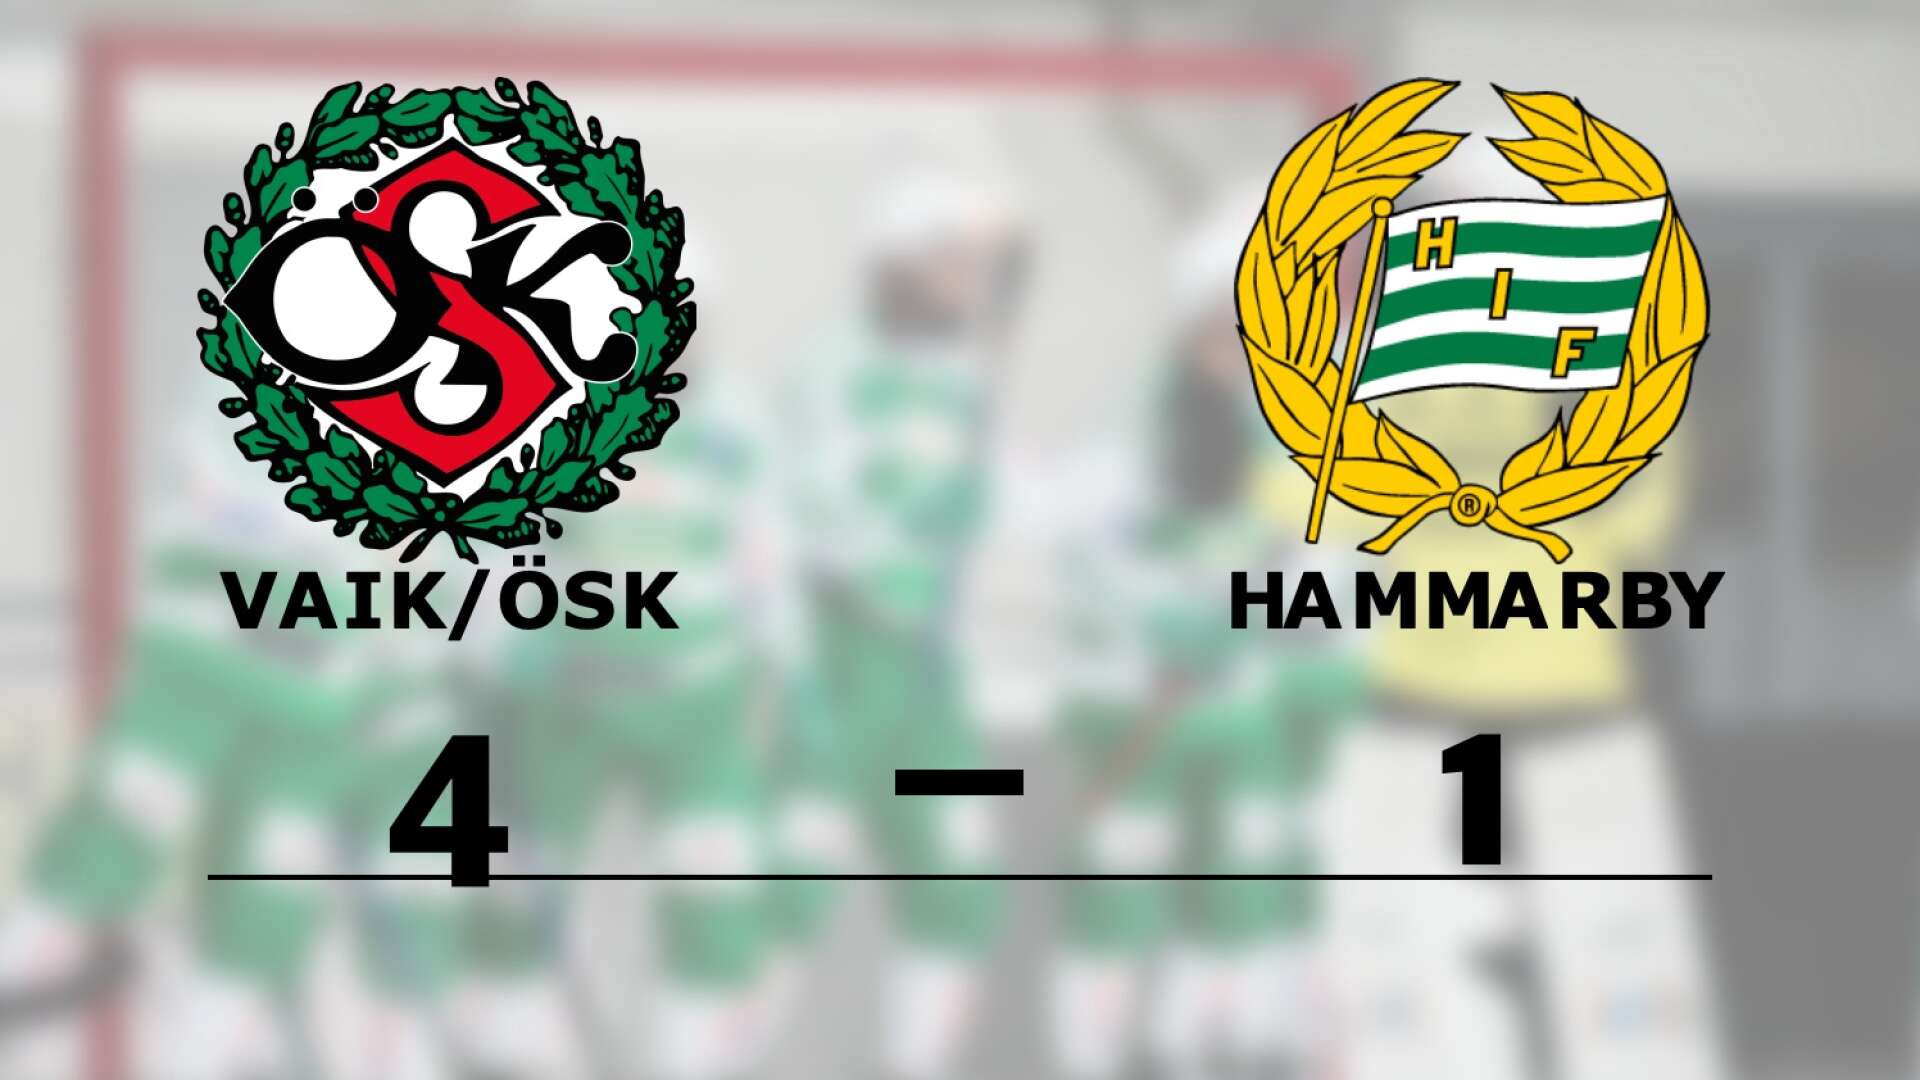 VAIK/ÖSK vann mot Hammarby